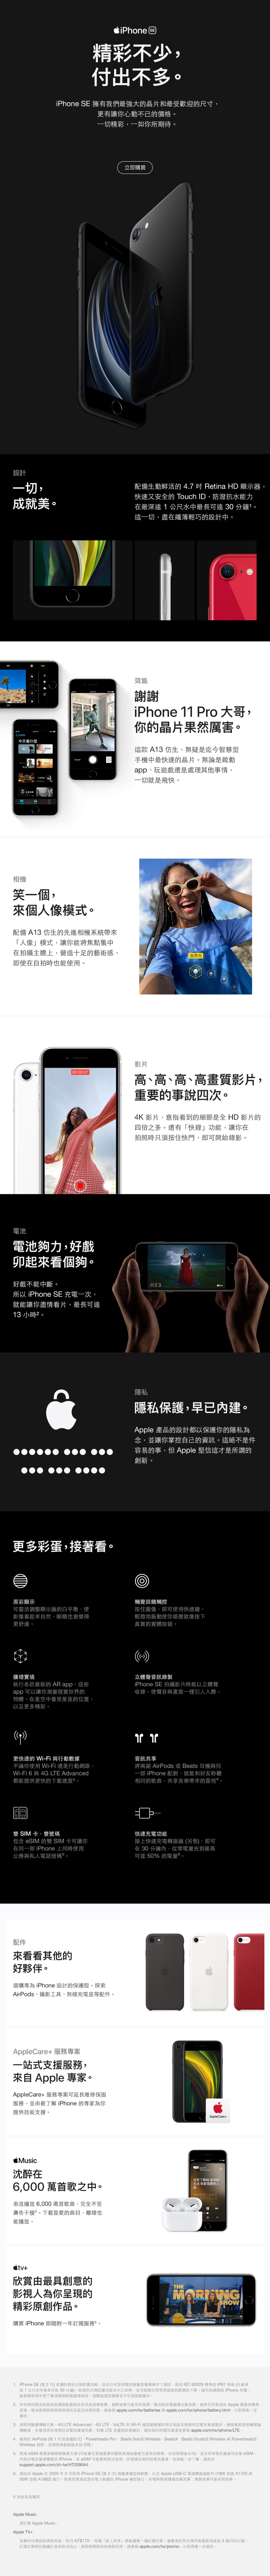 Iphone Se 64gb 規格介紹 中華電信網路門市cht Com Tw